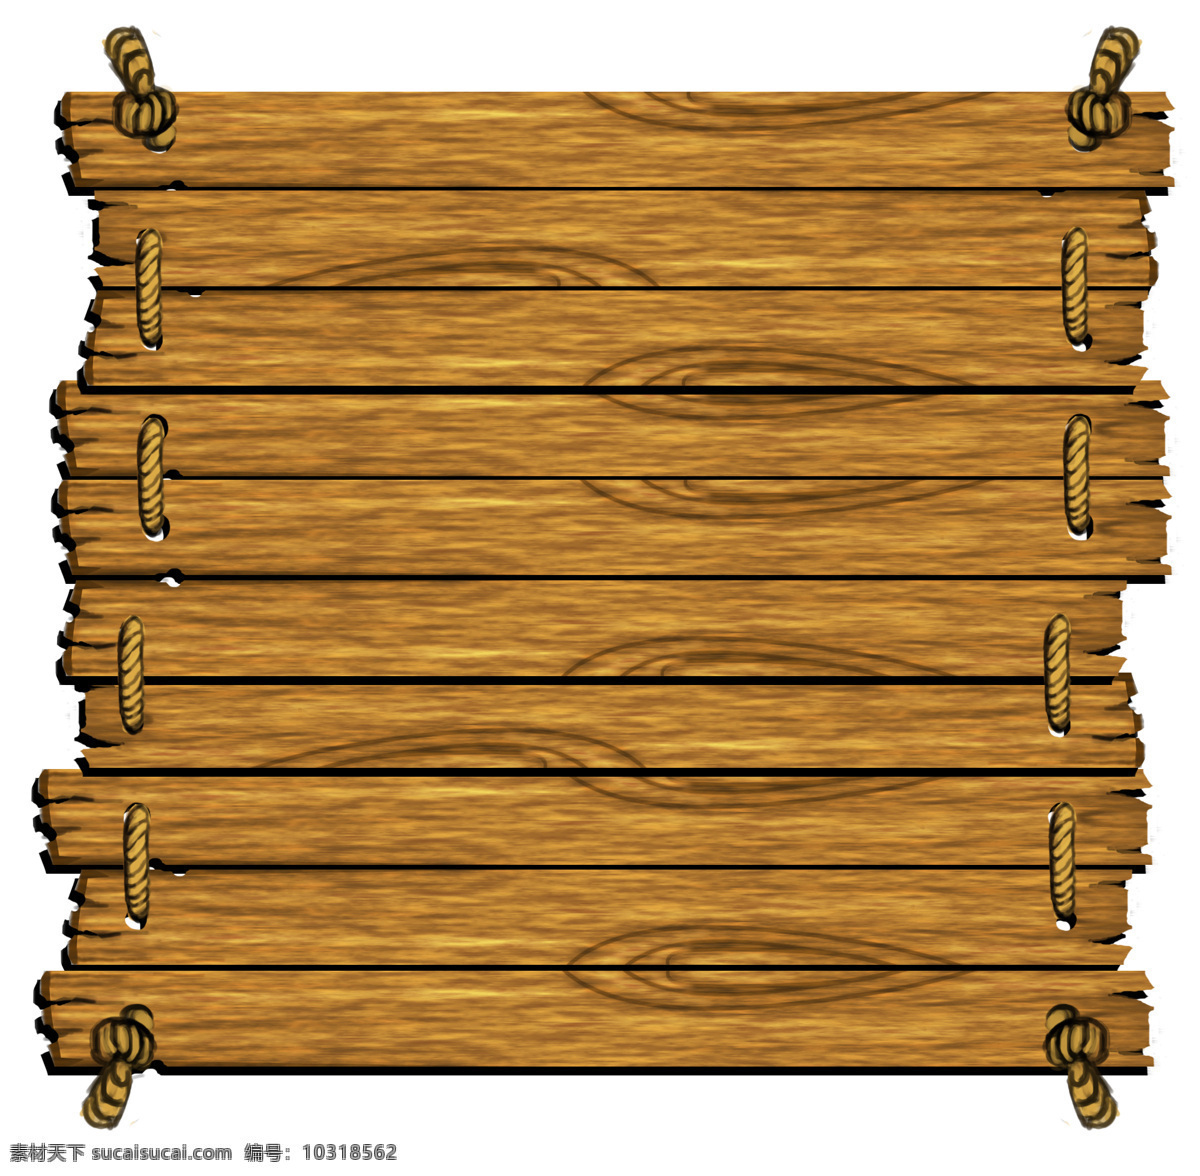 告示牌 木板 木条 装饰木板 绳子 木块 背景底纹 底纹边框